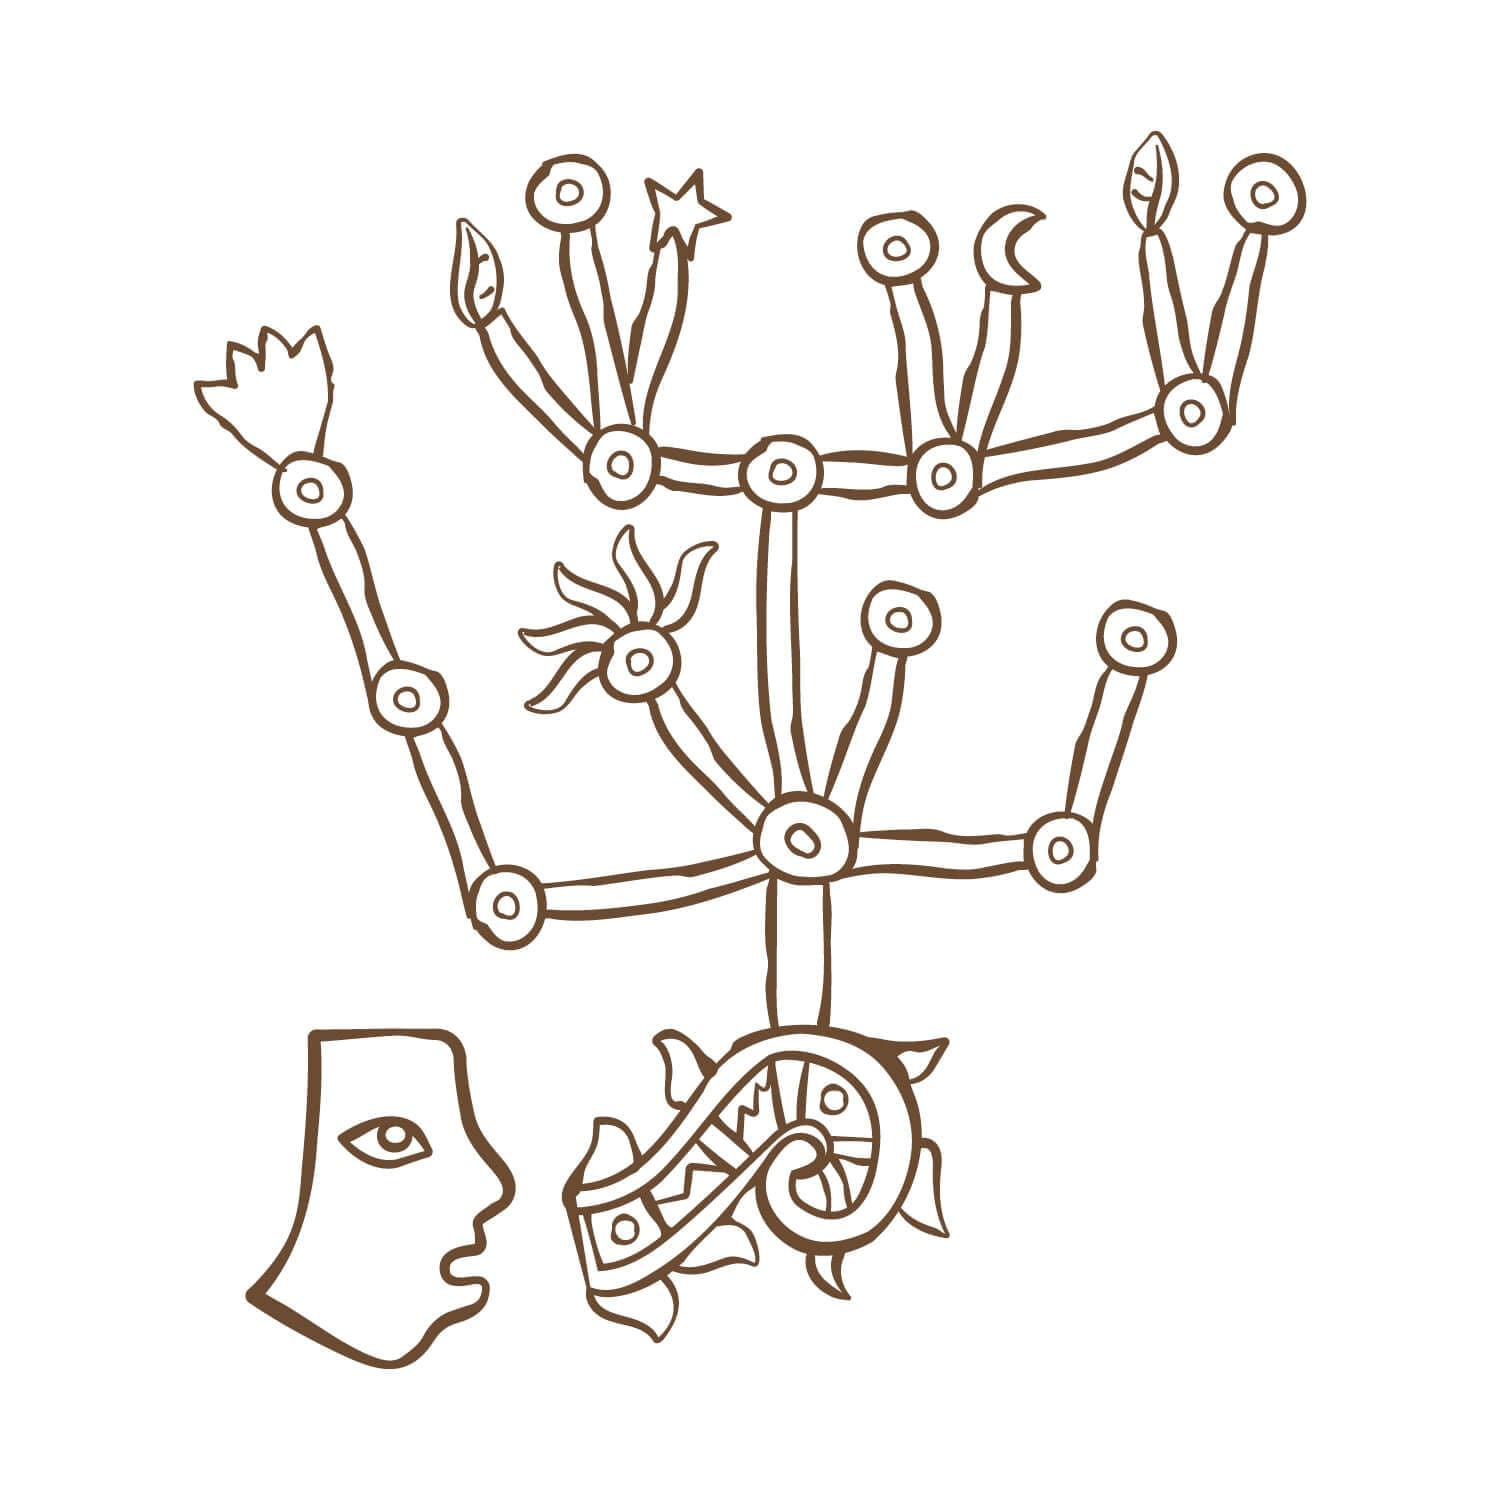 Le hiéroglyphe " Rooted Connection" signe de feu par Ichetkar est un symbole aztèque empreint de la culture mexicaine, créé pour le spa Esperanza.